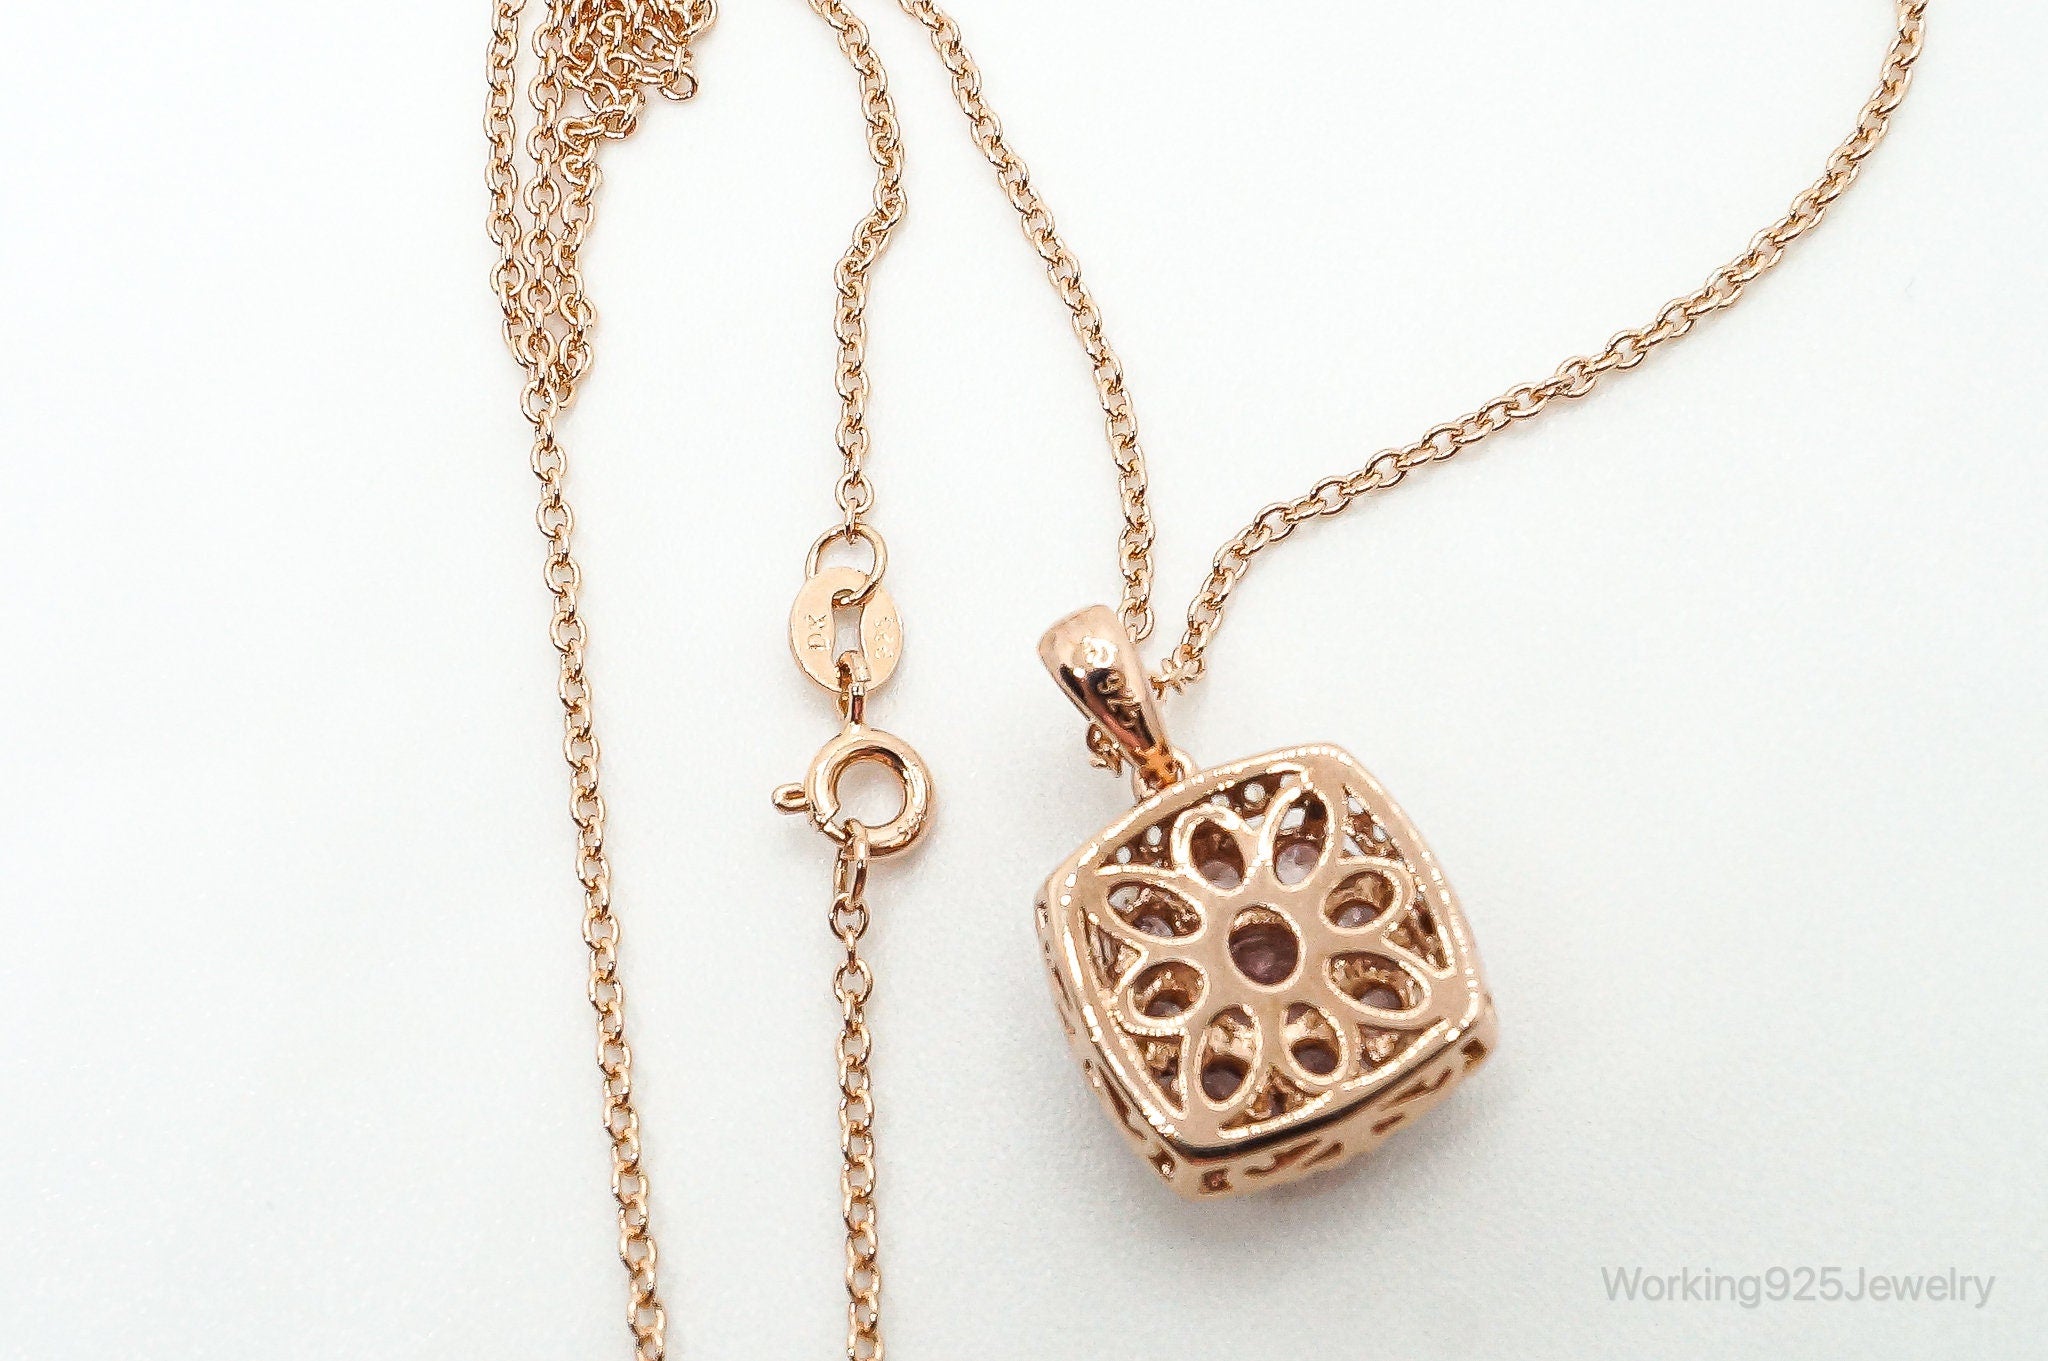 Designer DK White & Pink CZ Rose Gold Vermeil Sterling Silver Necklace